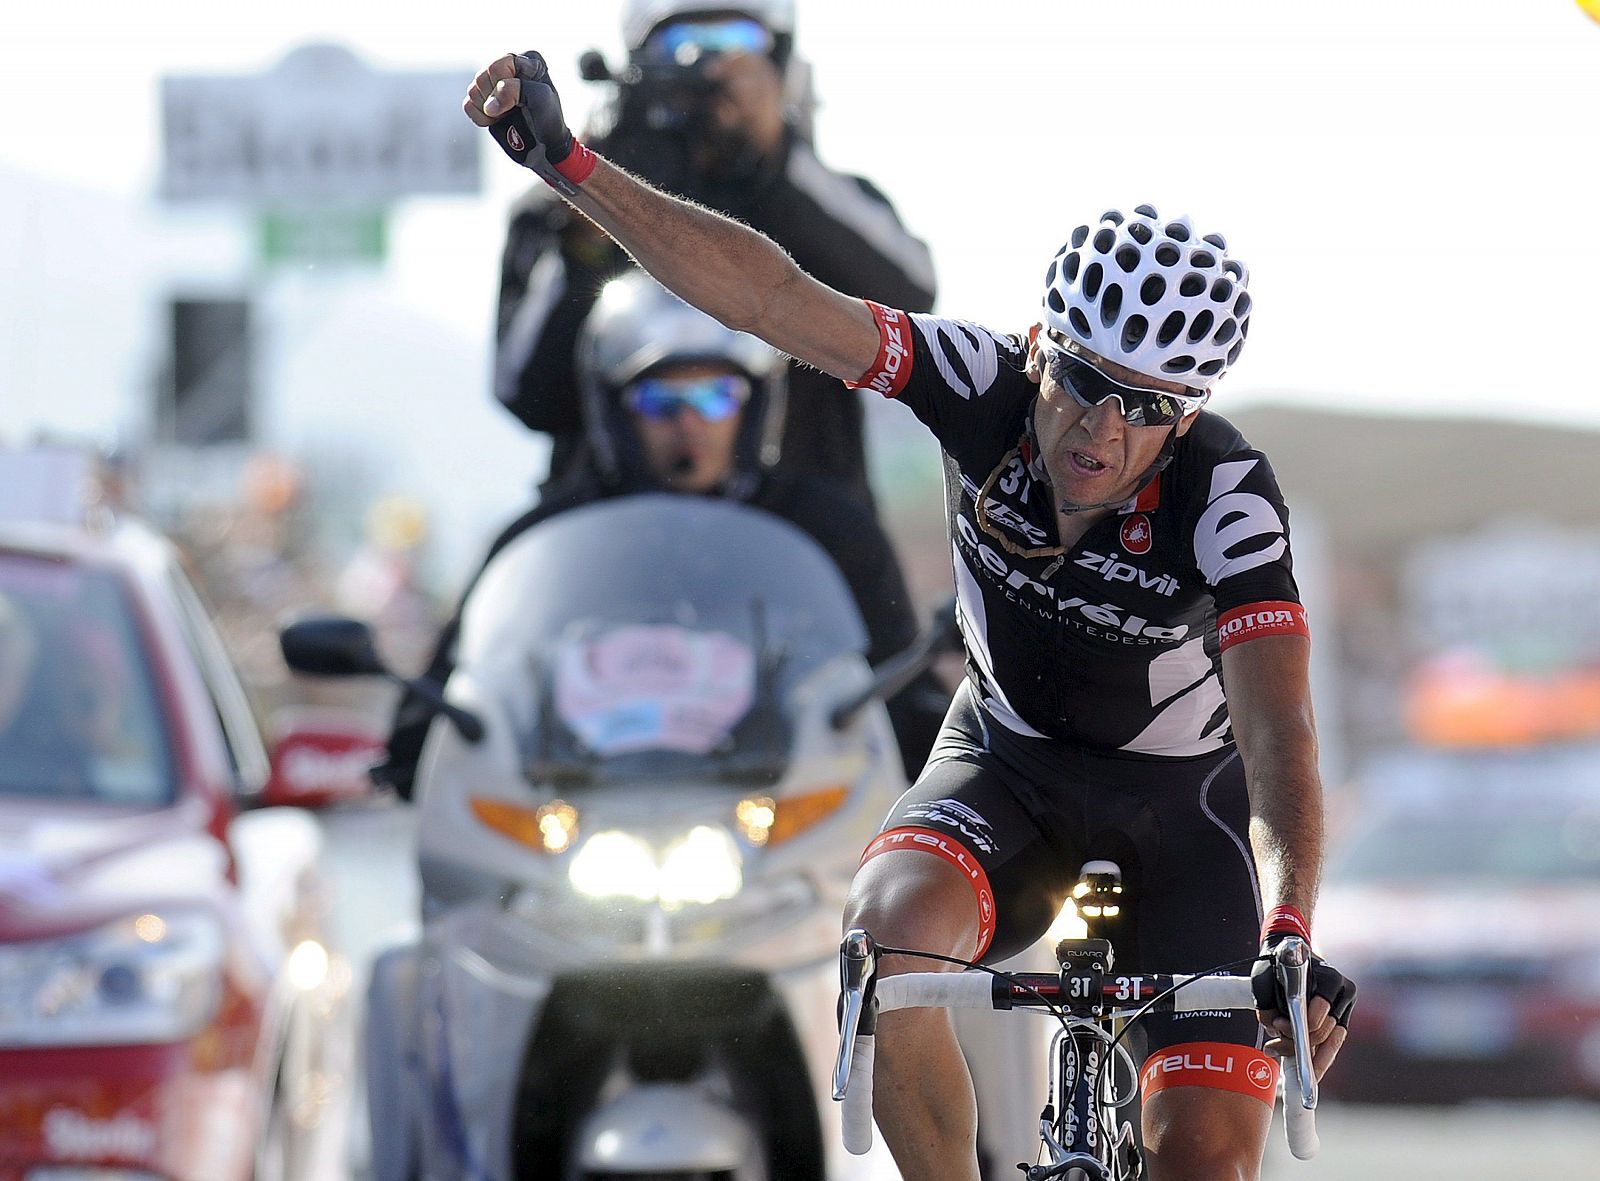 El ciclista español del equipo Cervélo, Carlos Sastre, celebra la victoria.